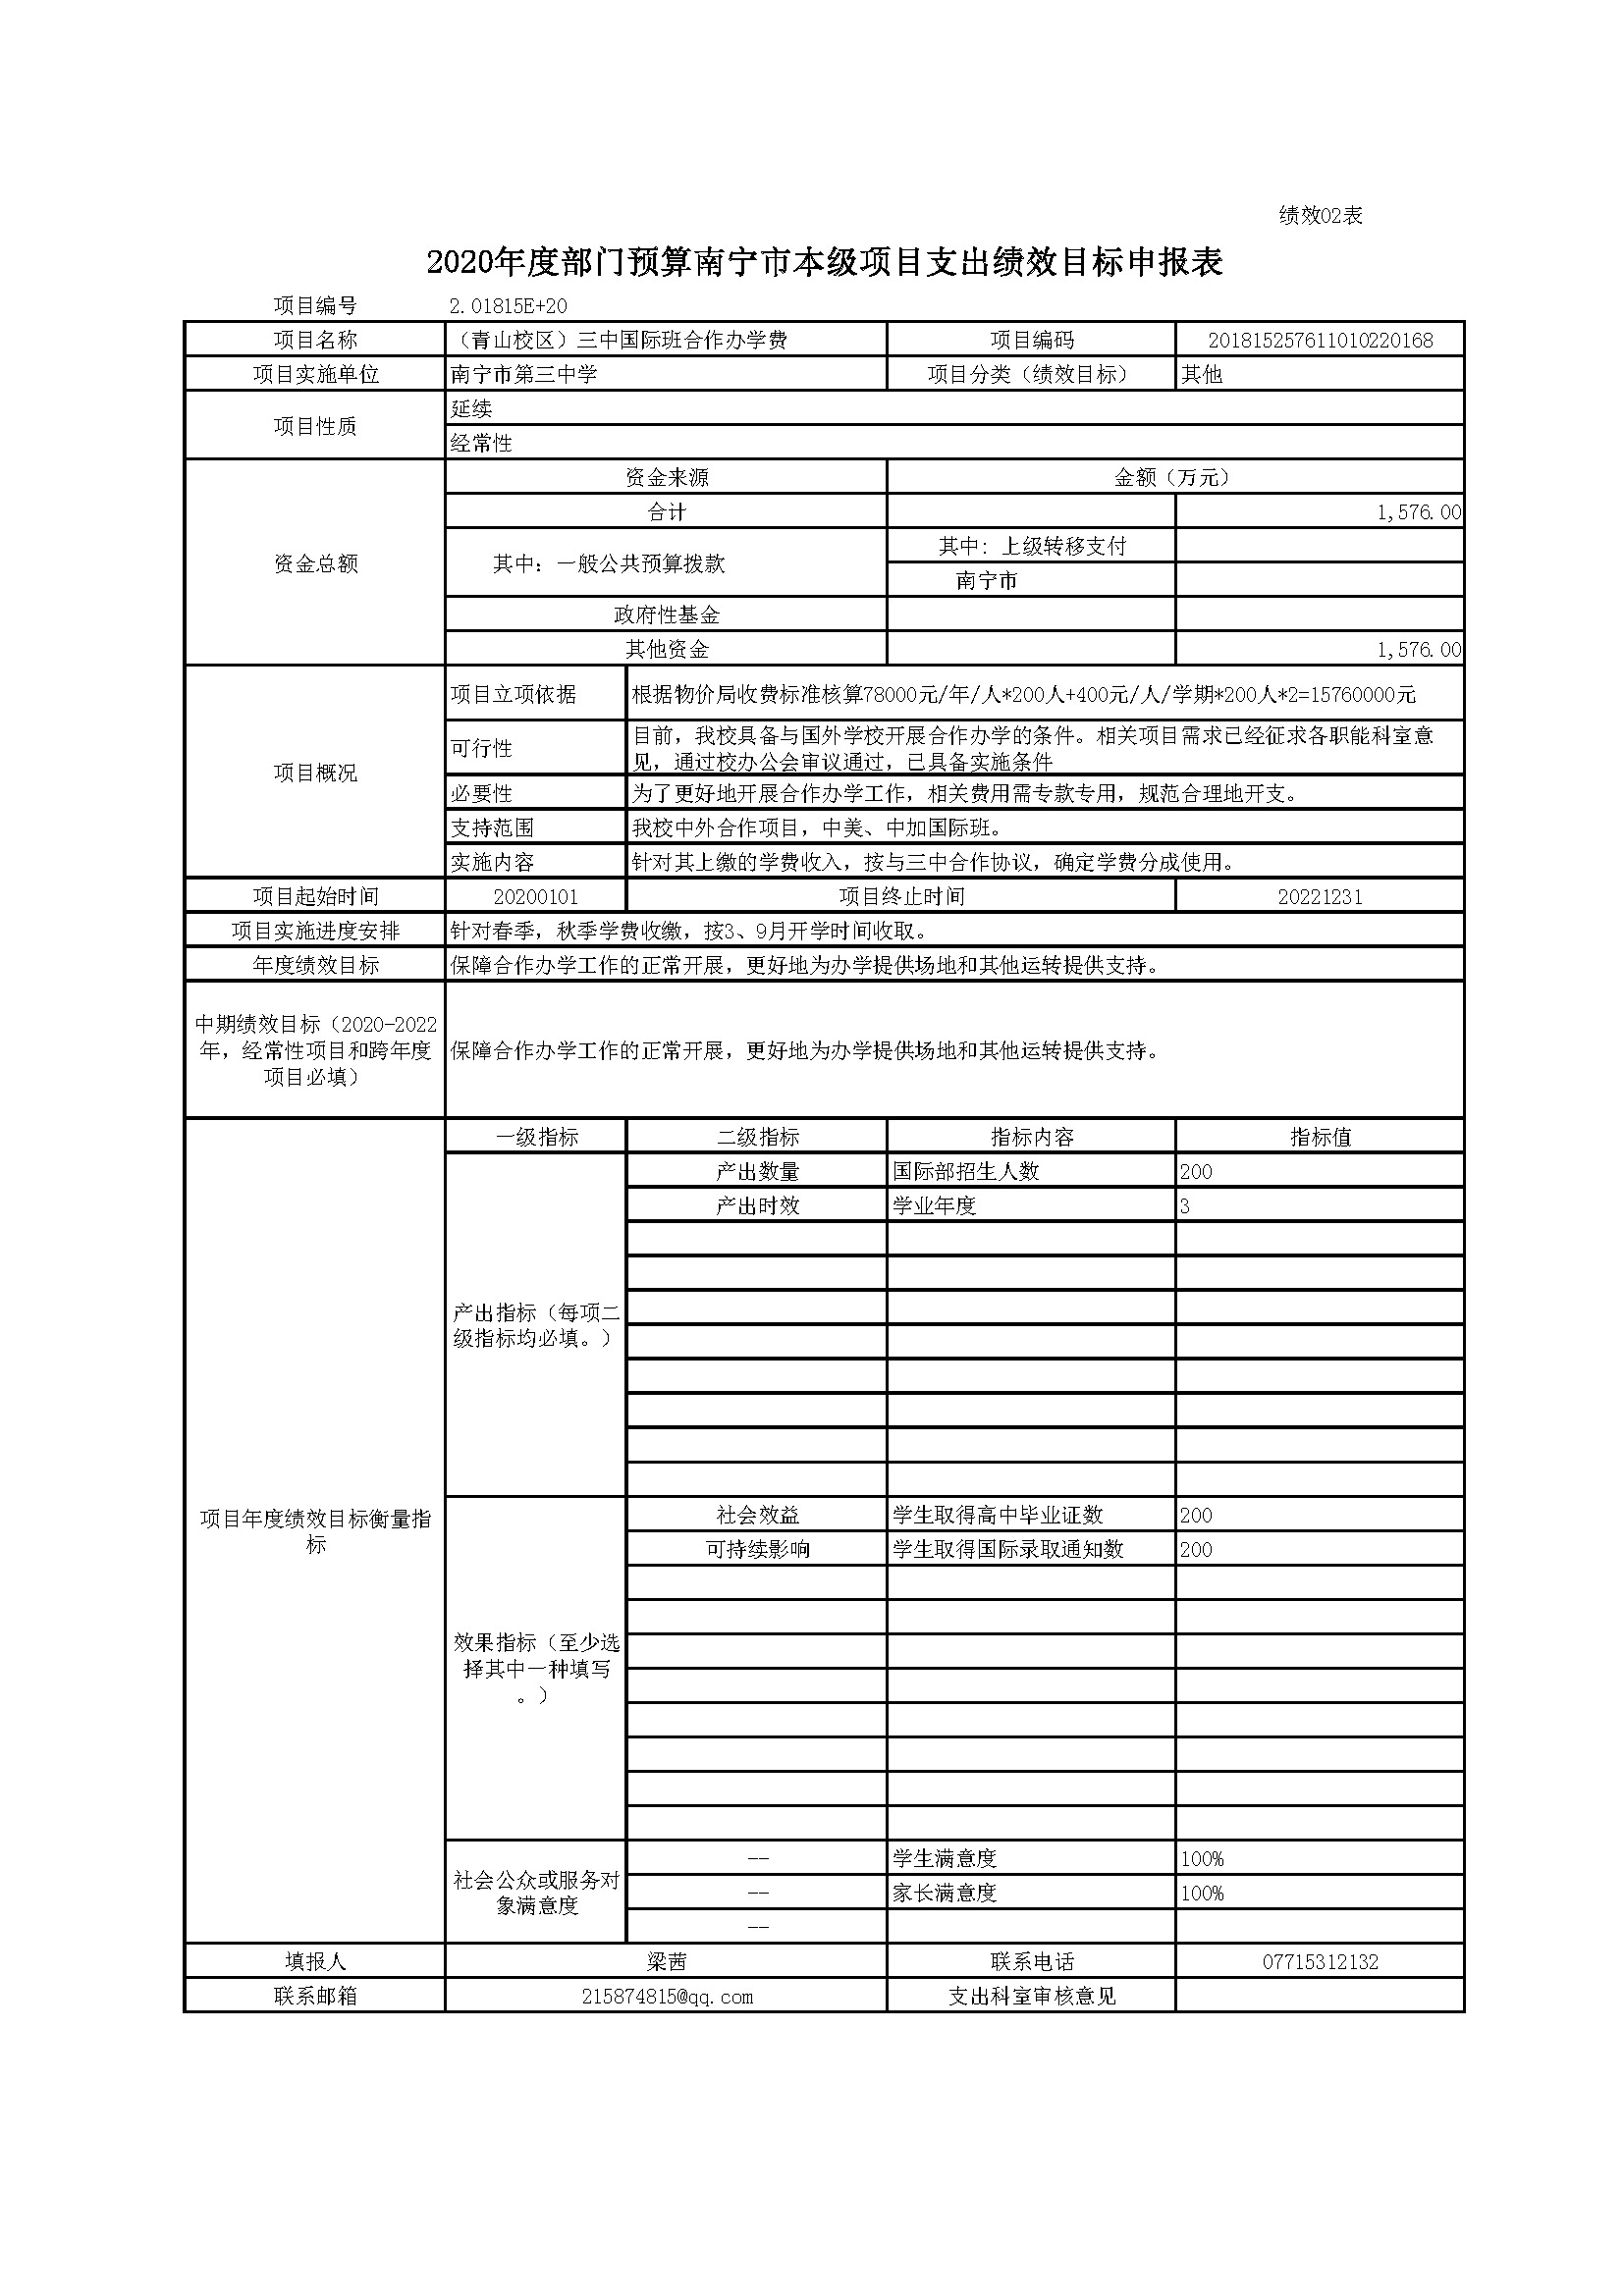 2020年南宁三中部门预算公开附件表格(1)_页面_14.jpg